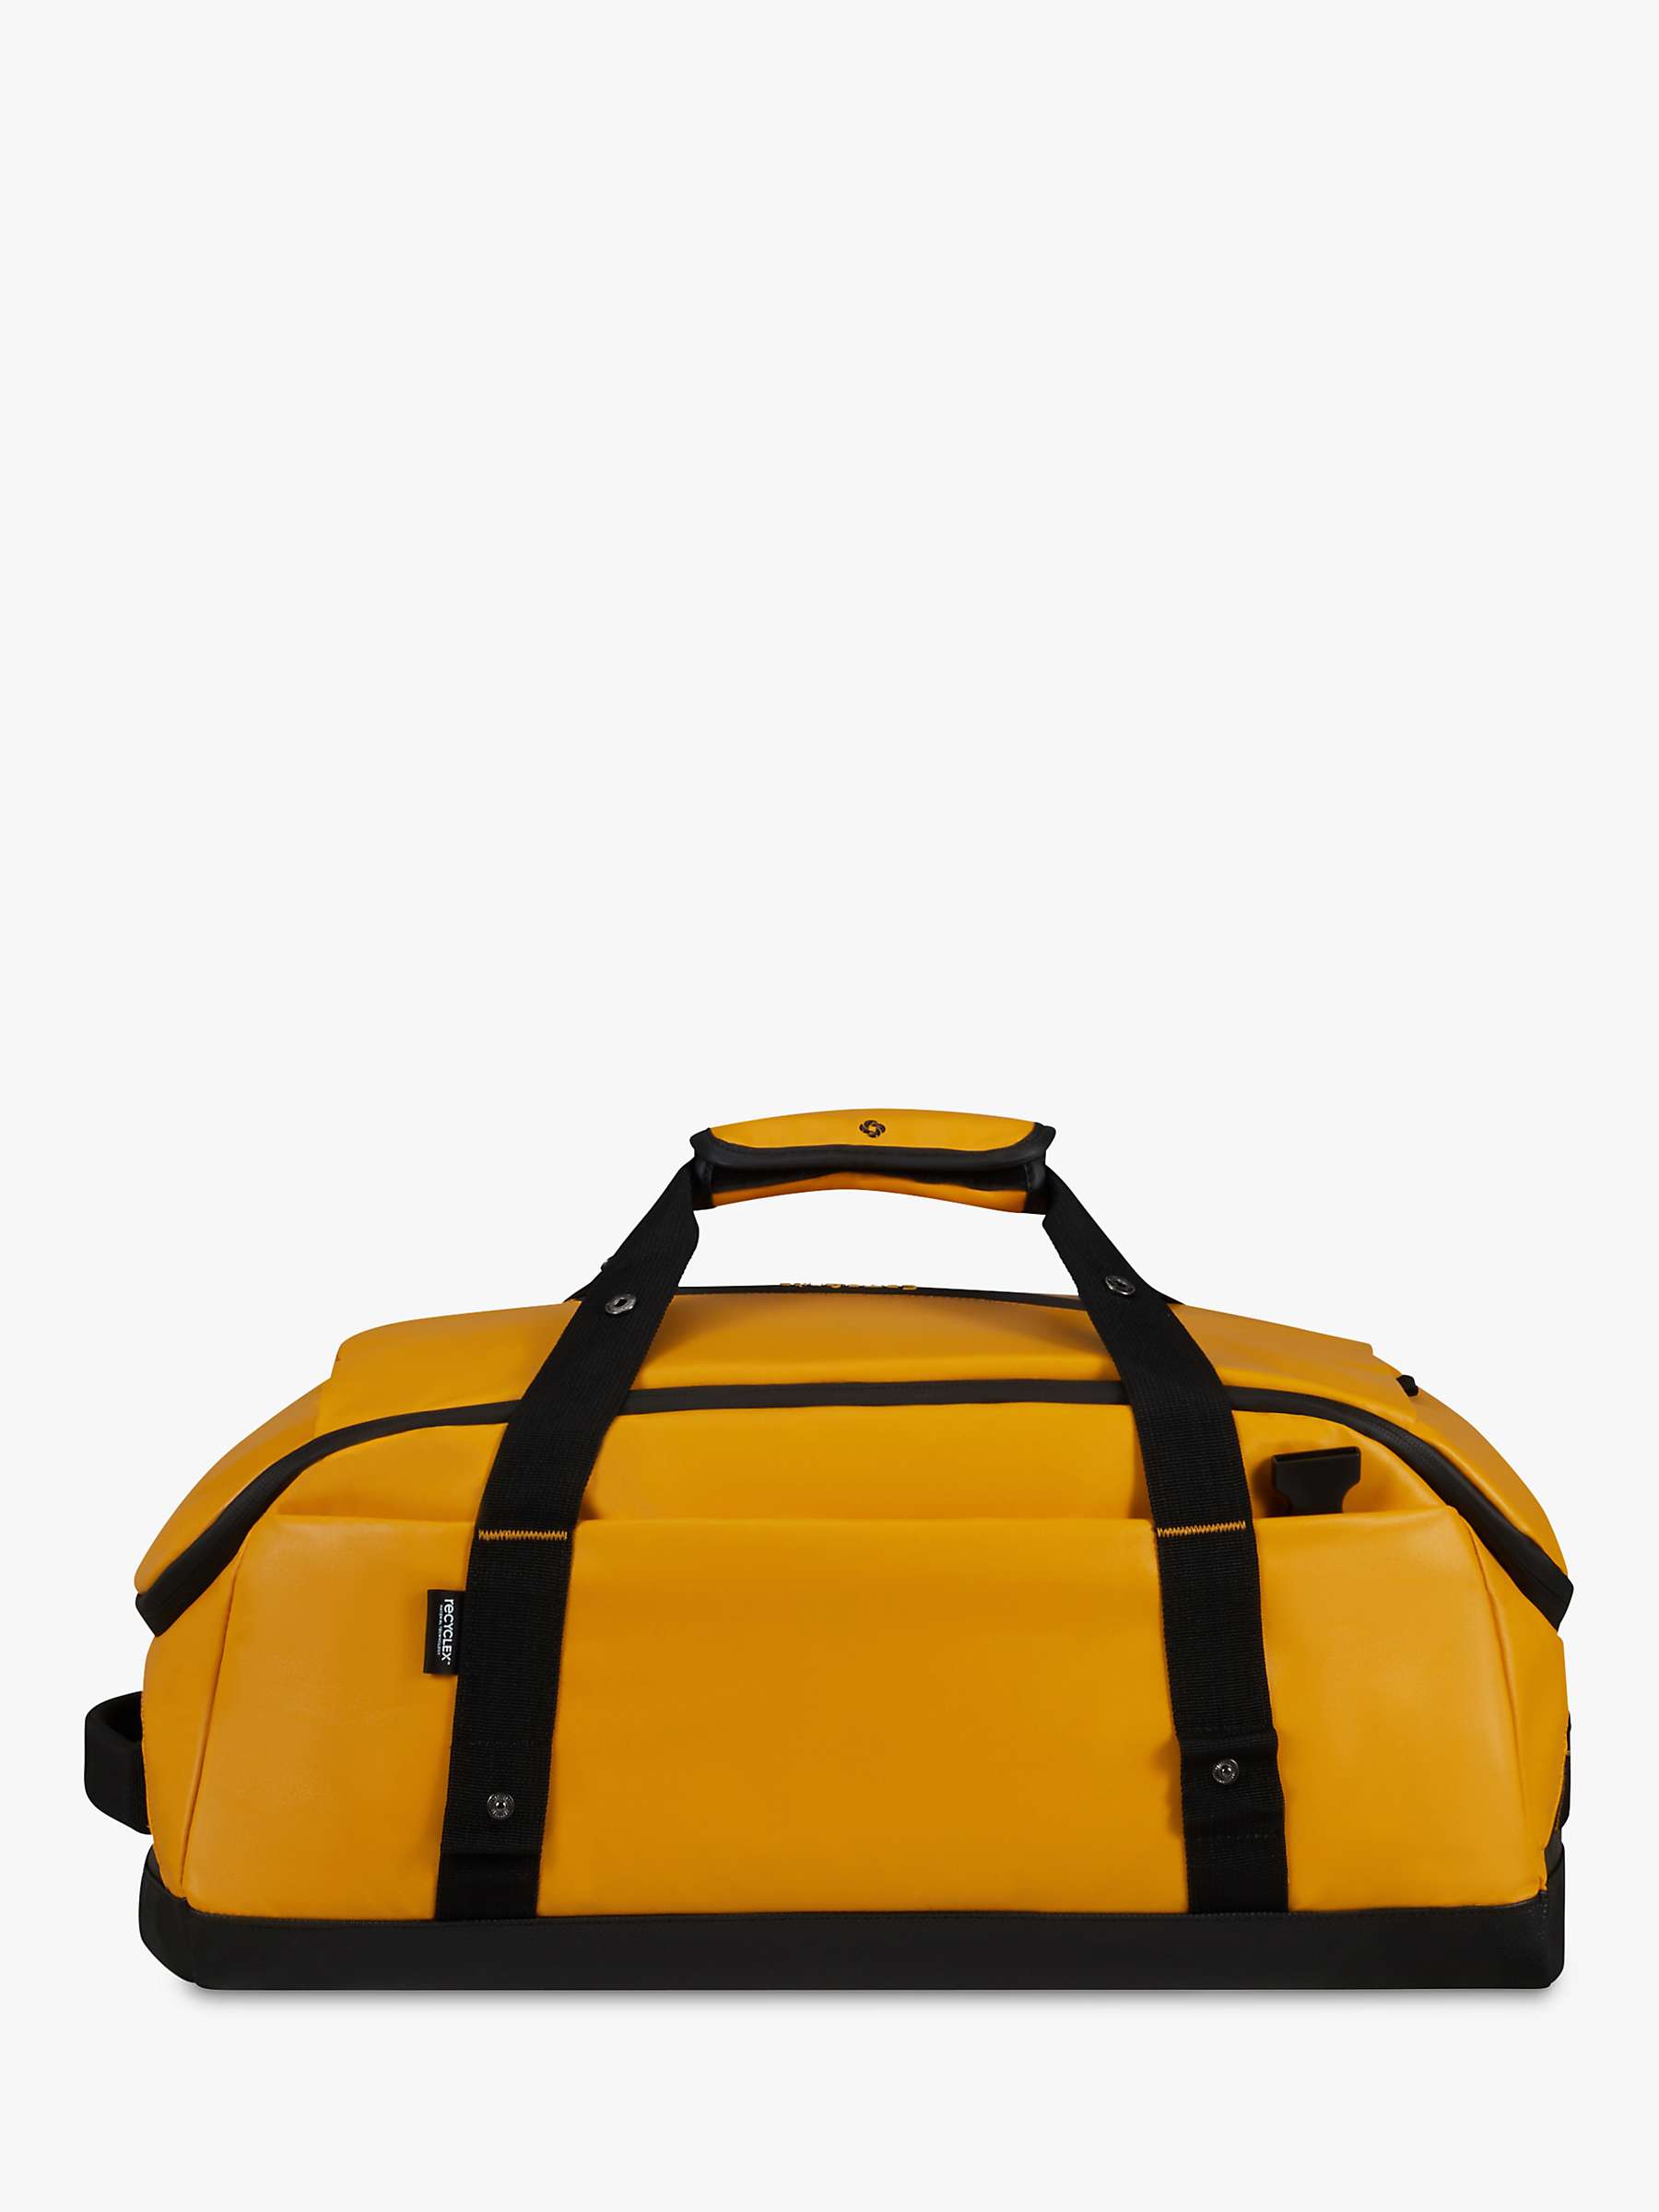 Buy Samsonite Ecodiver Duffle Bag, Yellow Online at johnlewis.com